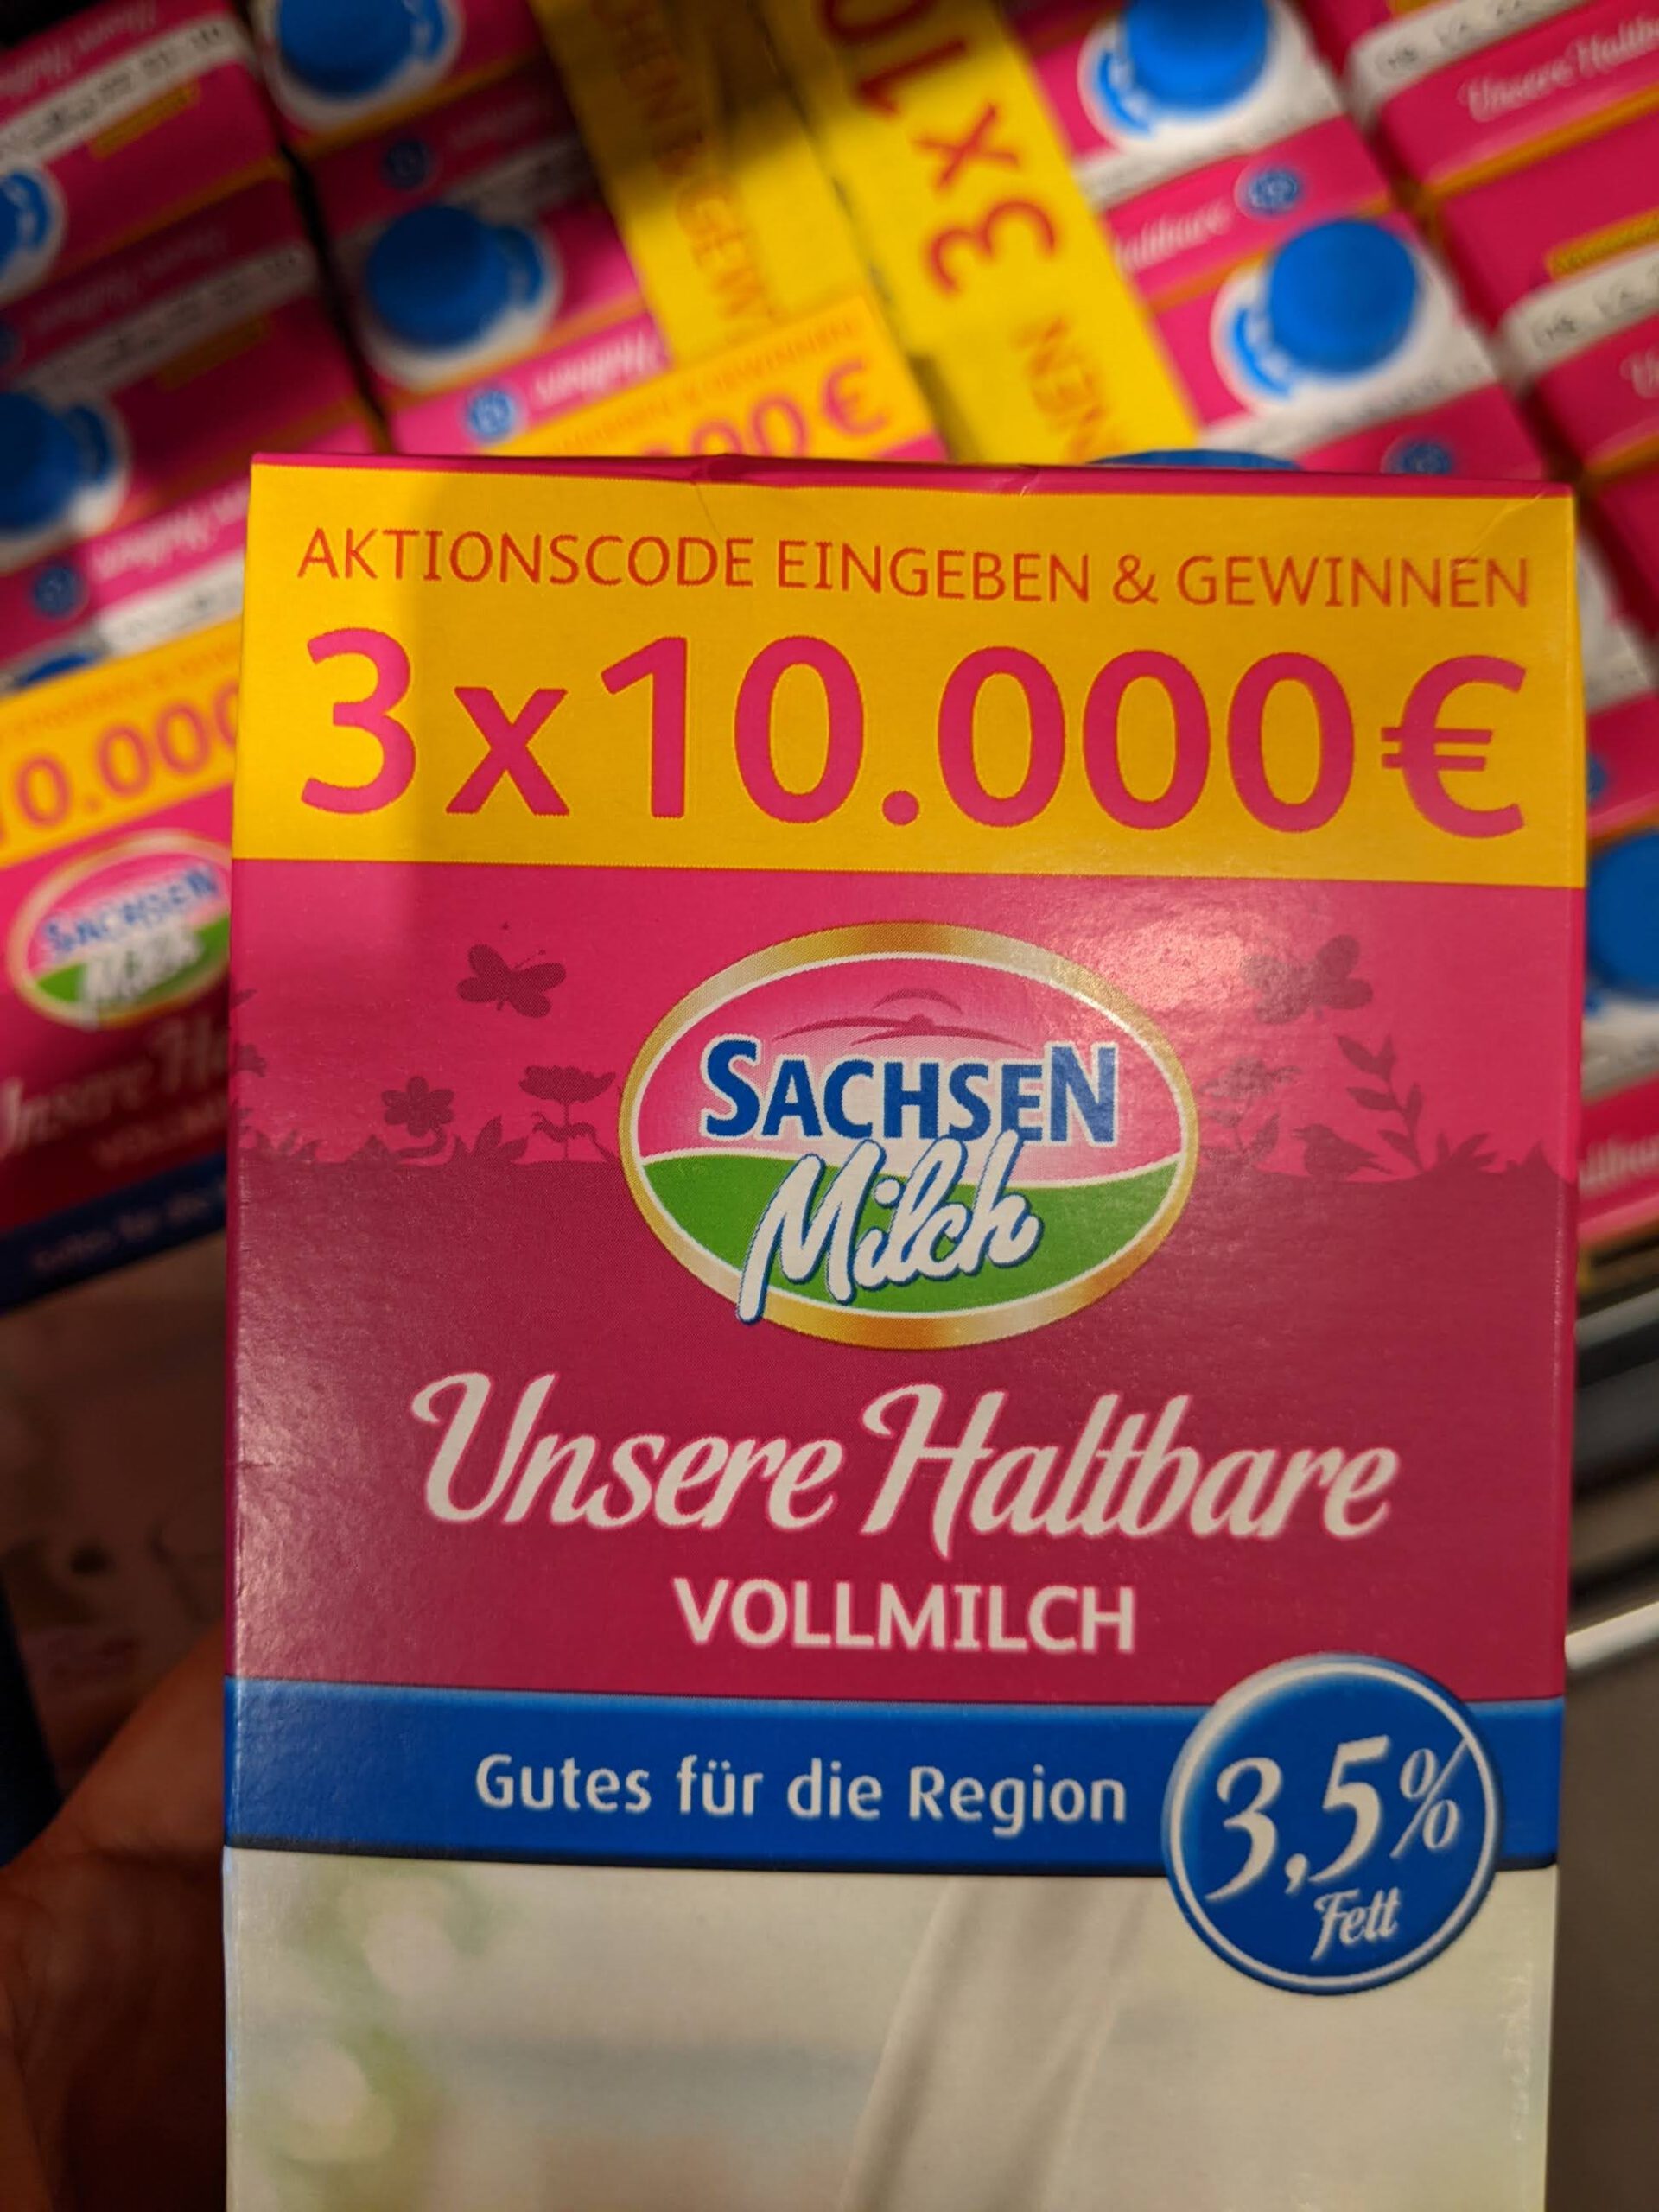 Sachsenmilch So schmeckt Zuhause. Aktionscode eingeben, 3x 10.000 Euro gewinnen